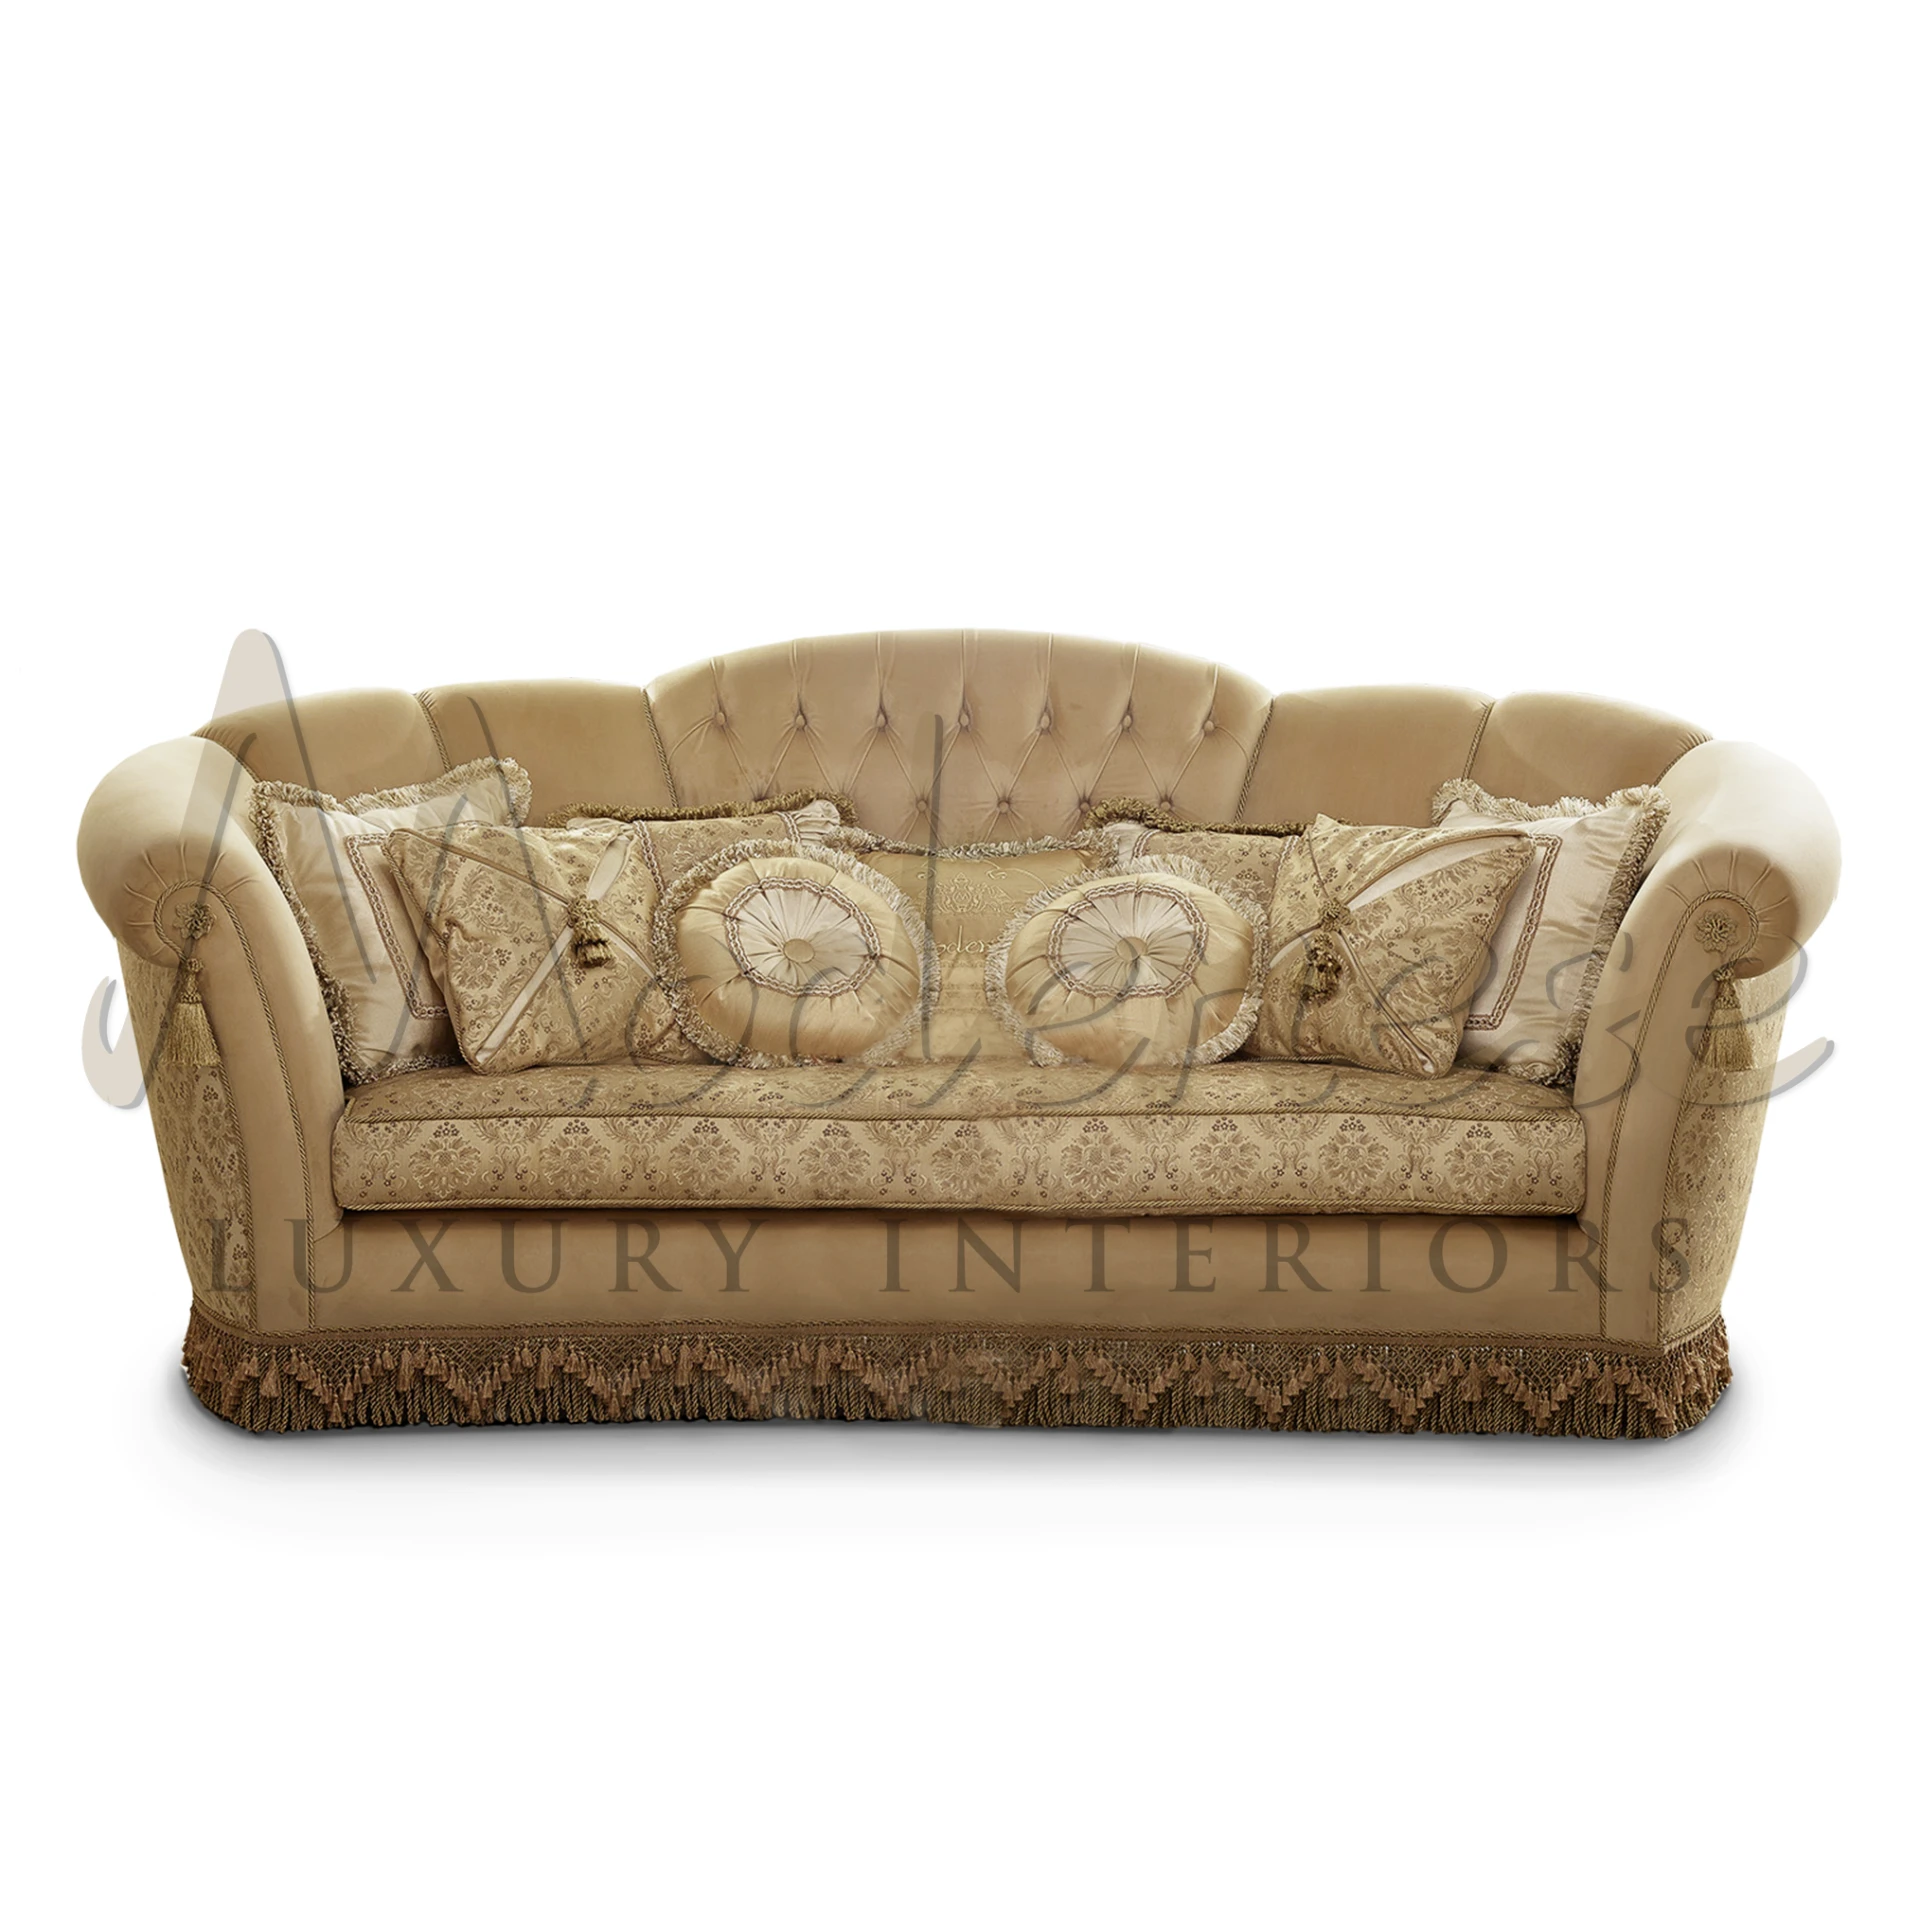 Classic Italian Upholstered Sofa with ornate wooden frame and luxurious velvet upholstery, embodying refined Italian design.